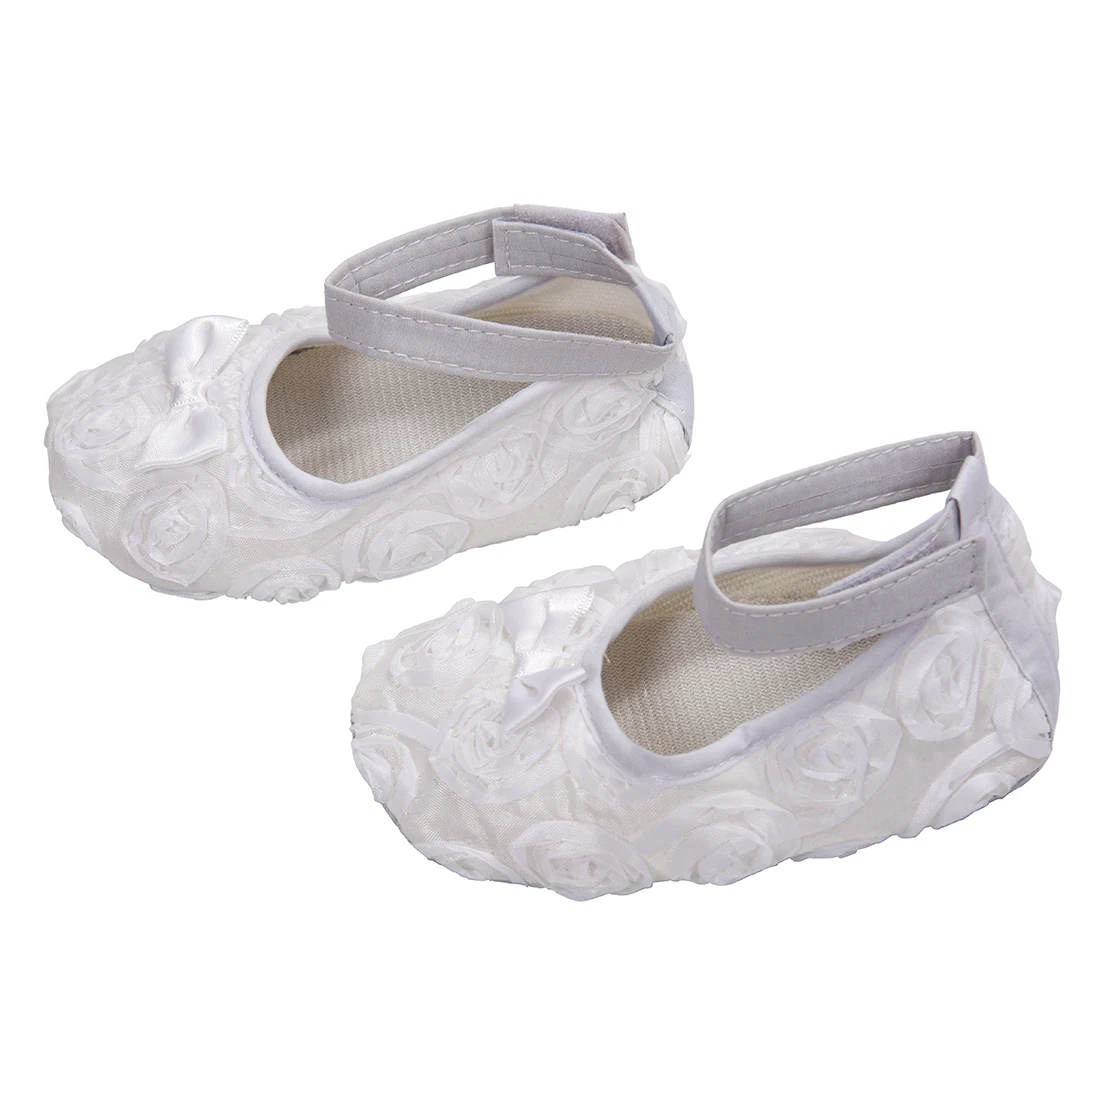 ABWE/Лучшая ; Удобная нескользящая обувь принцессы для маленьких девочек(12-18 месяцев, белый цвет